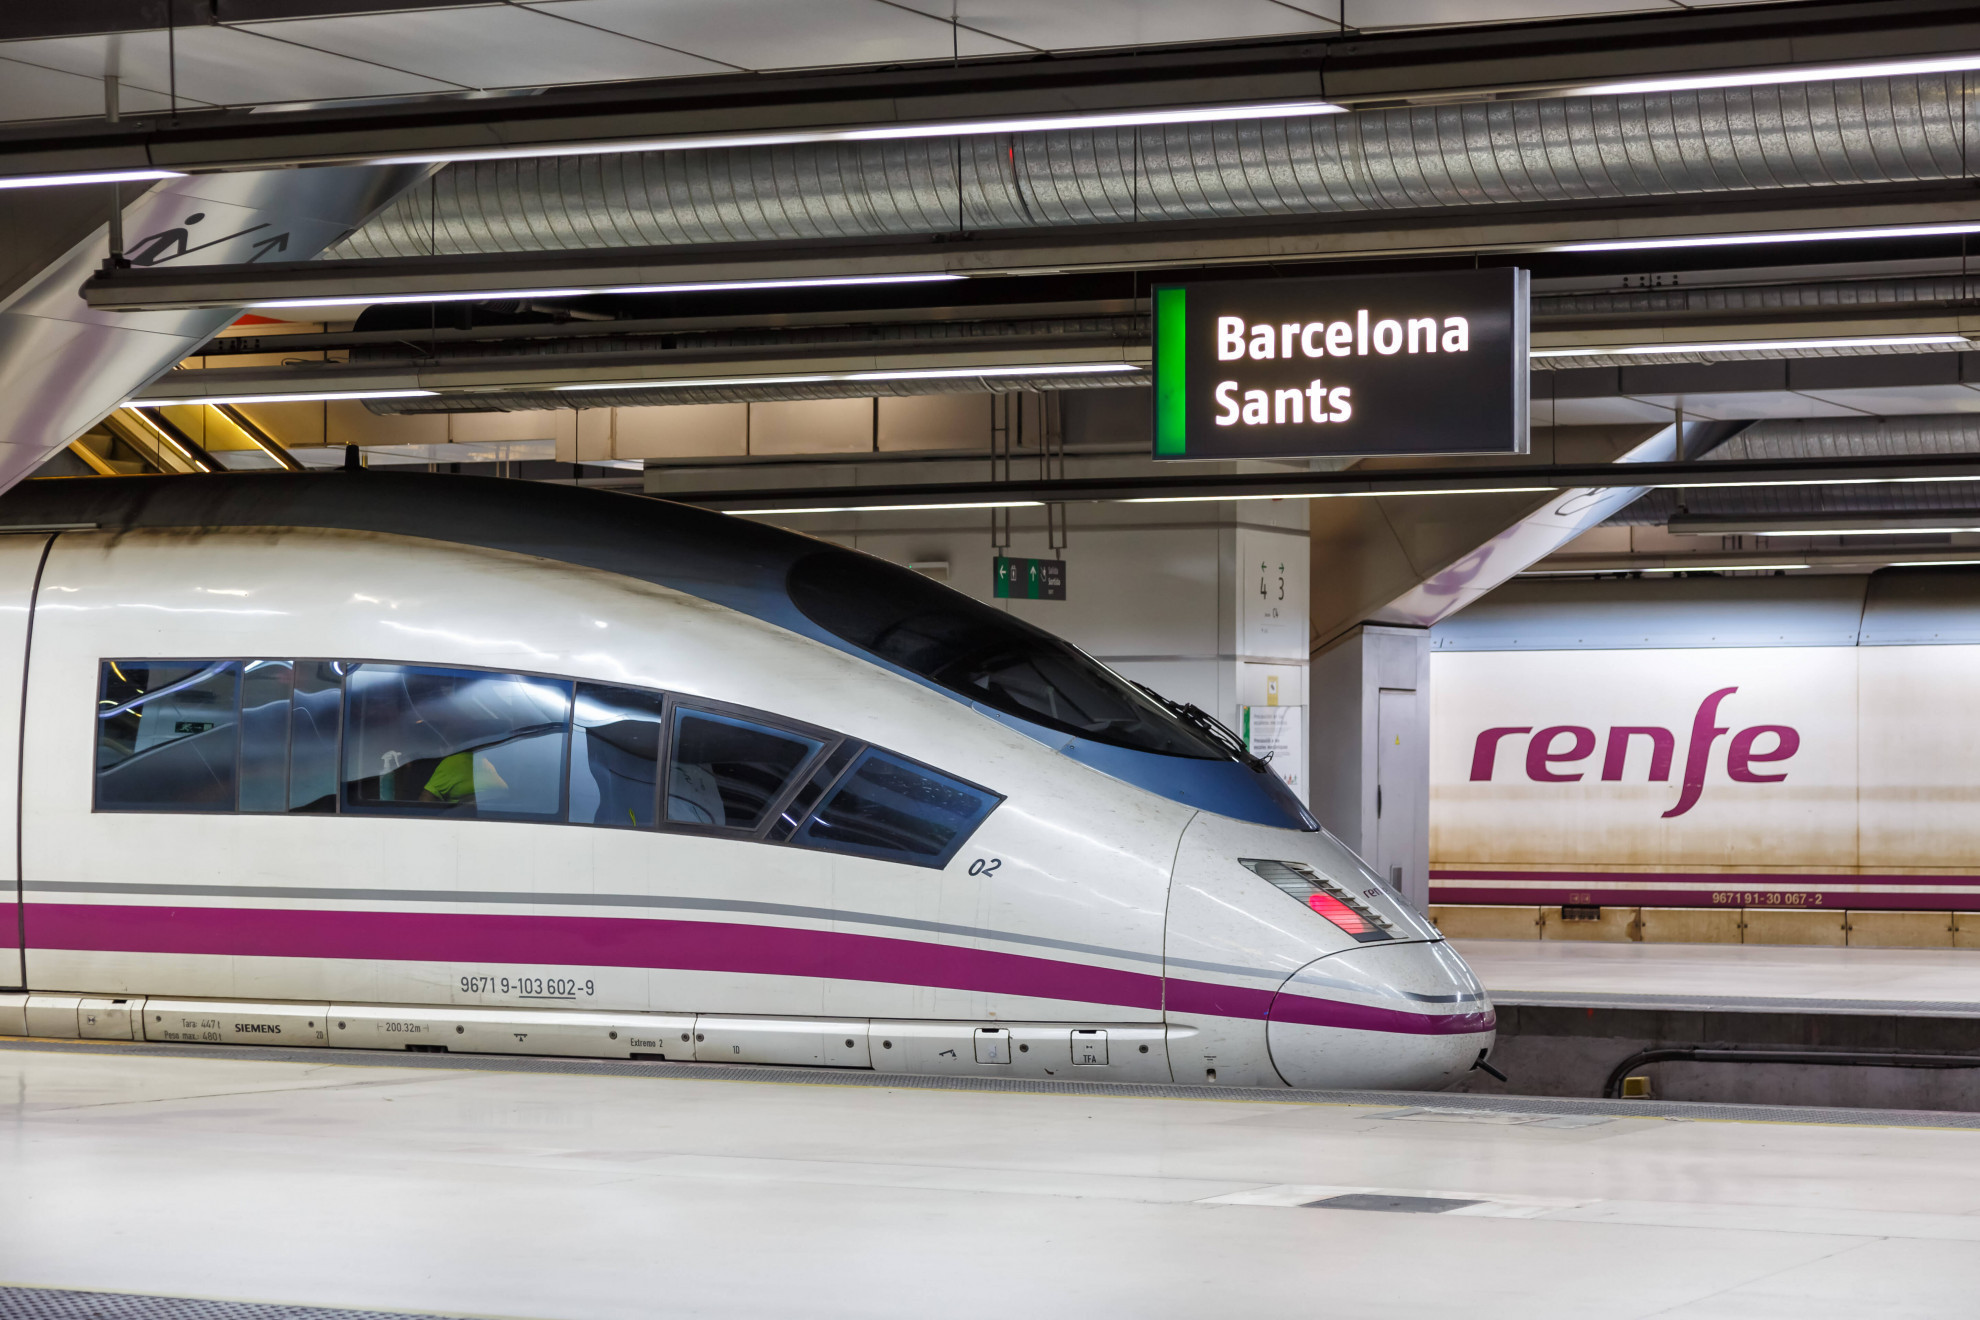 In Spagna treni gratis per i pendolari anche nel 2023